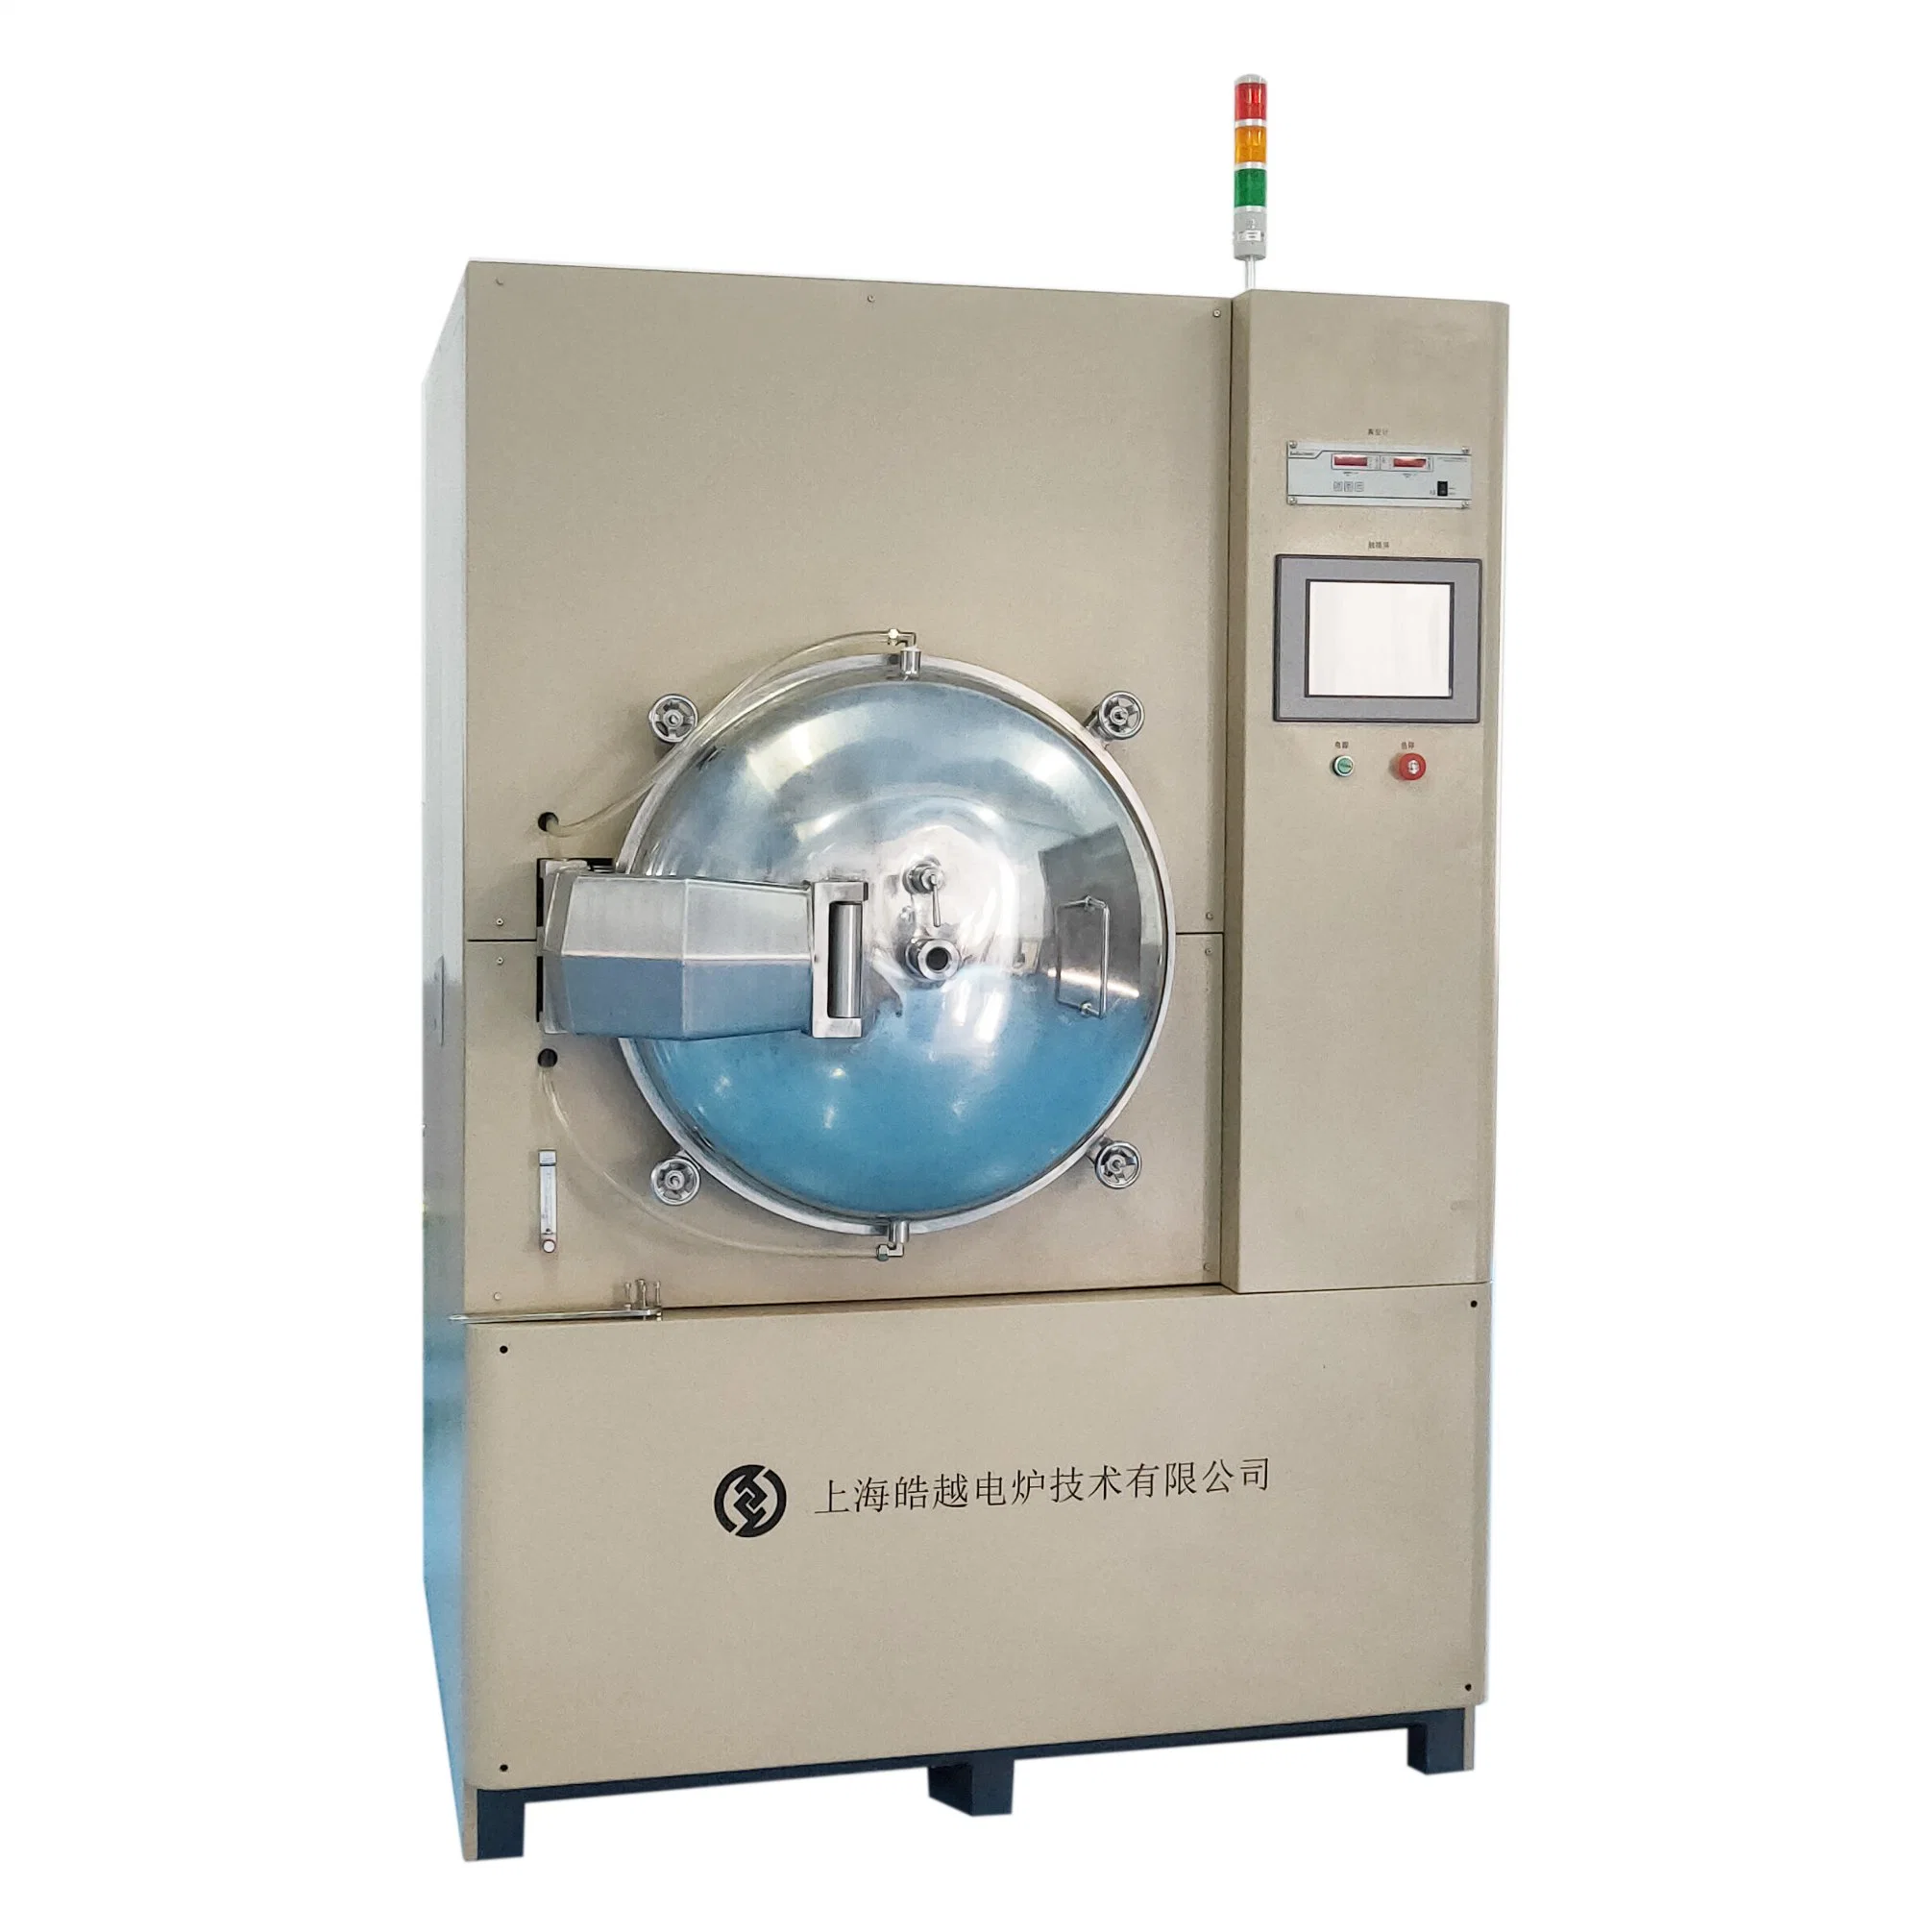 Haoyue P2-20 2000c лаборатории программируемой цифровой горячей нажав Сопротивление обогрева печи для спекания Advanced керамики